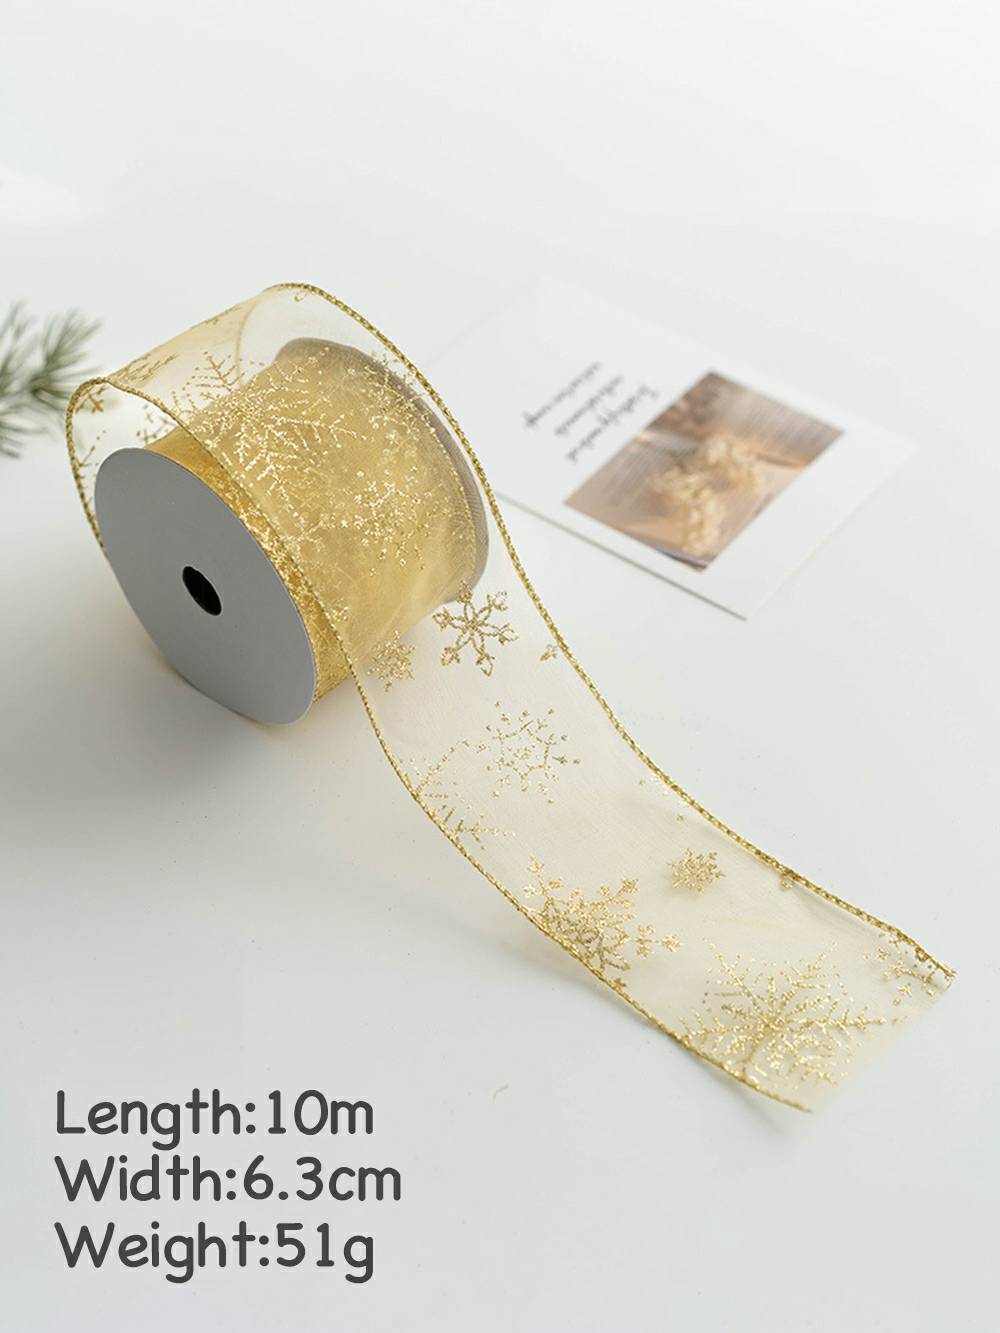 Materiale decorativo per fiocco fai-da-te con neve per decorazione albero di Natale